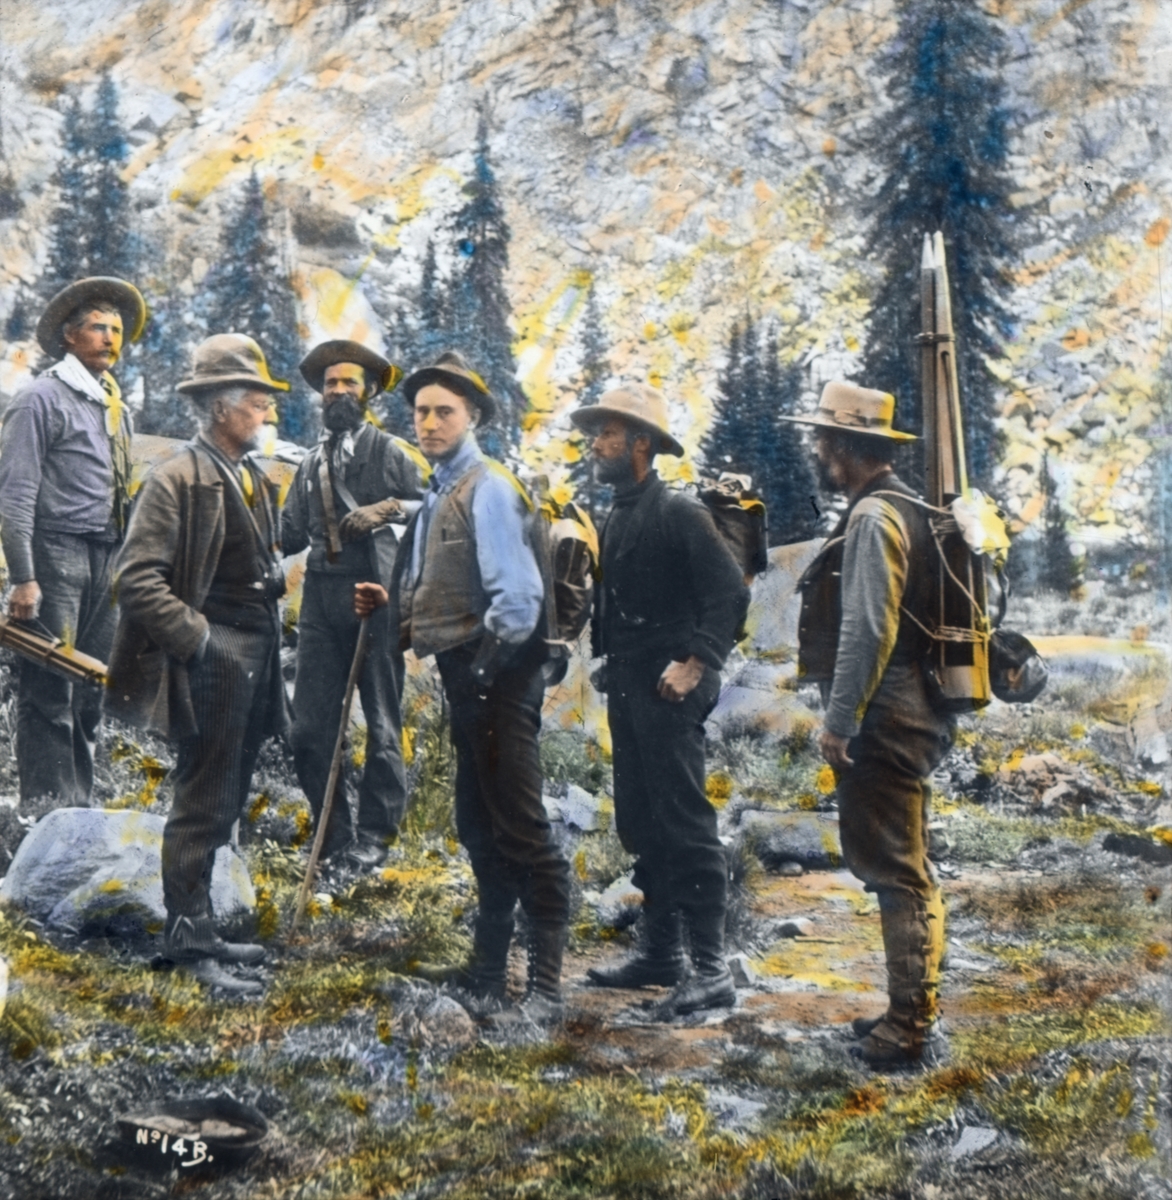 Håndkolorert dias. Seks menn utrustet med stativer og ryggsekker.  I boken "En emigrants ungdomserindringer" forteller fotografen Anders Beer Wilse om sitt arbeid i U.S.A, blant annet en ekspedisjon til områder utenfor Yellowstone nasjonalpark. Bildet er antakeligvis fra den ekspedisjonen.  